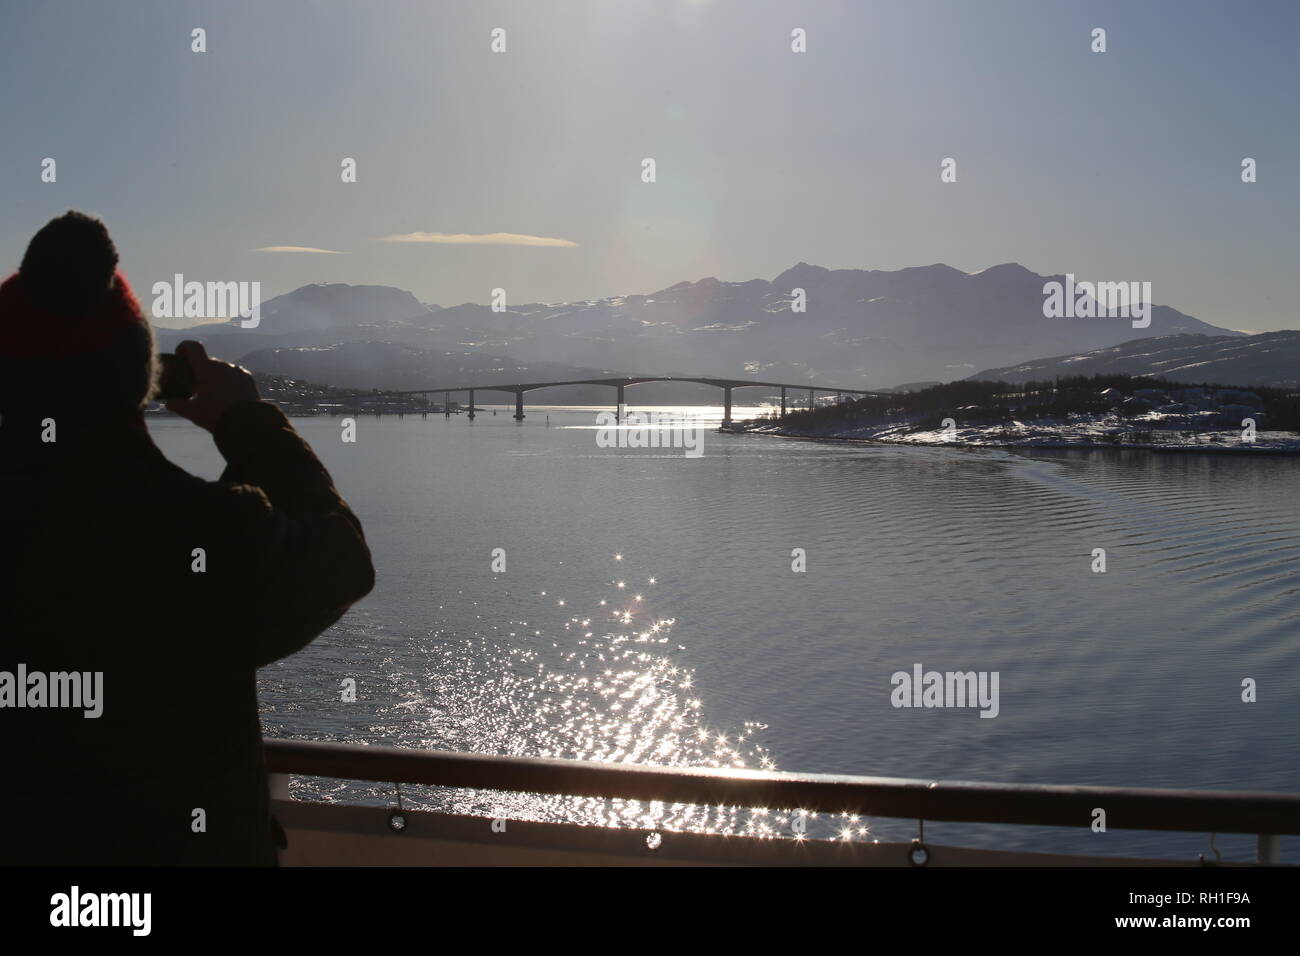 Auf der Fahrt nach Tromsö betrachtet ein Kreuzfahrtpassagier die Gisund-Brücke über den Gisund-Fjord Foto Stock